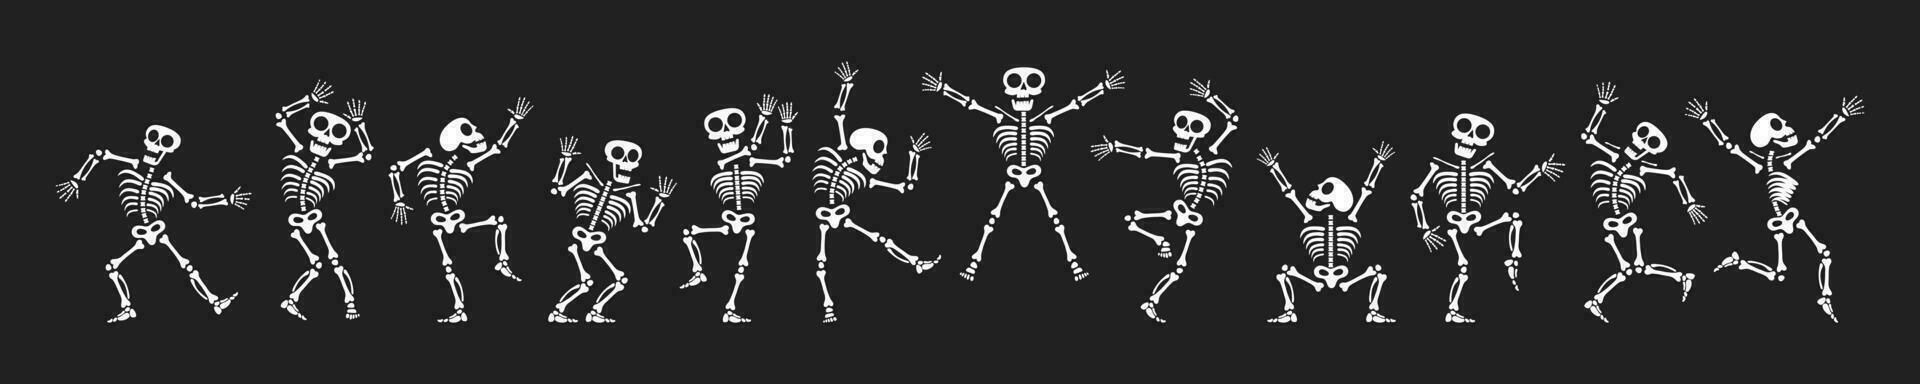 esqueletos bailando con diferente posiciones plano estilo diseño vector ilustración colocar.